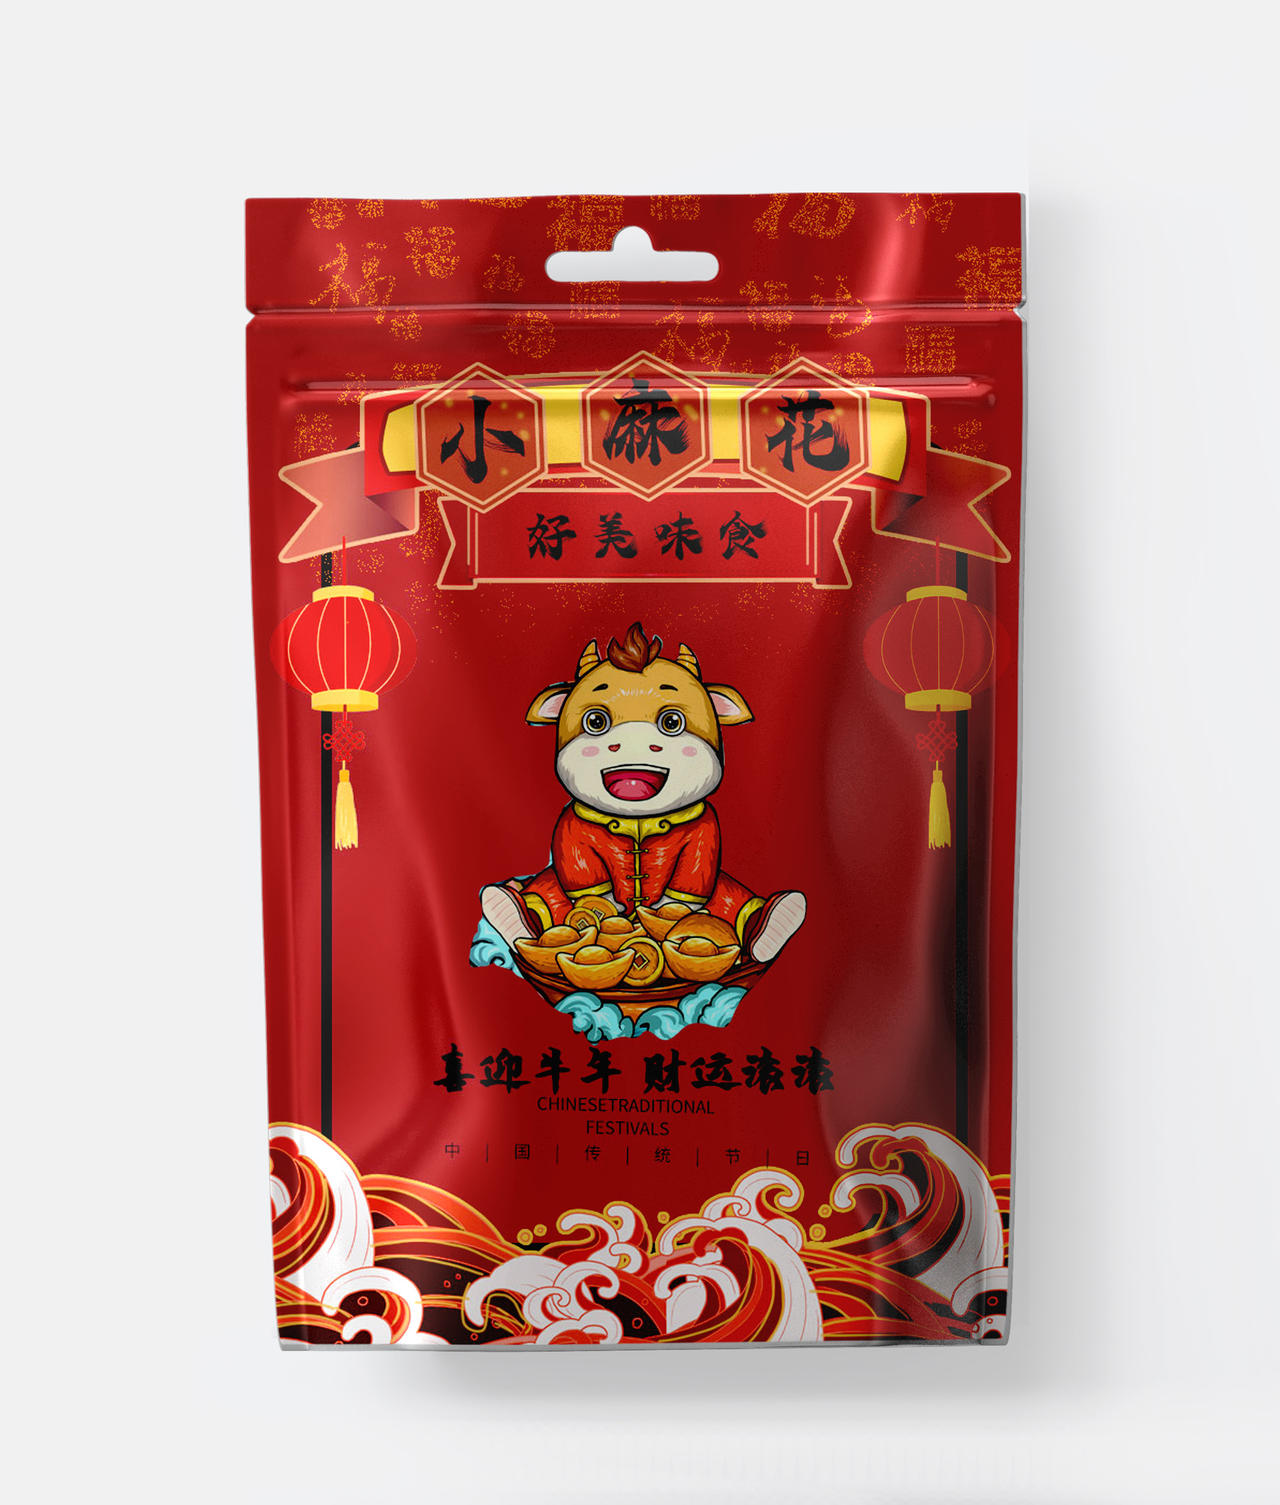 深红色卡通风格小麻花春节促销包装袋设计2021年货节